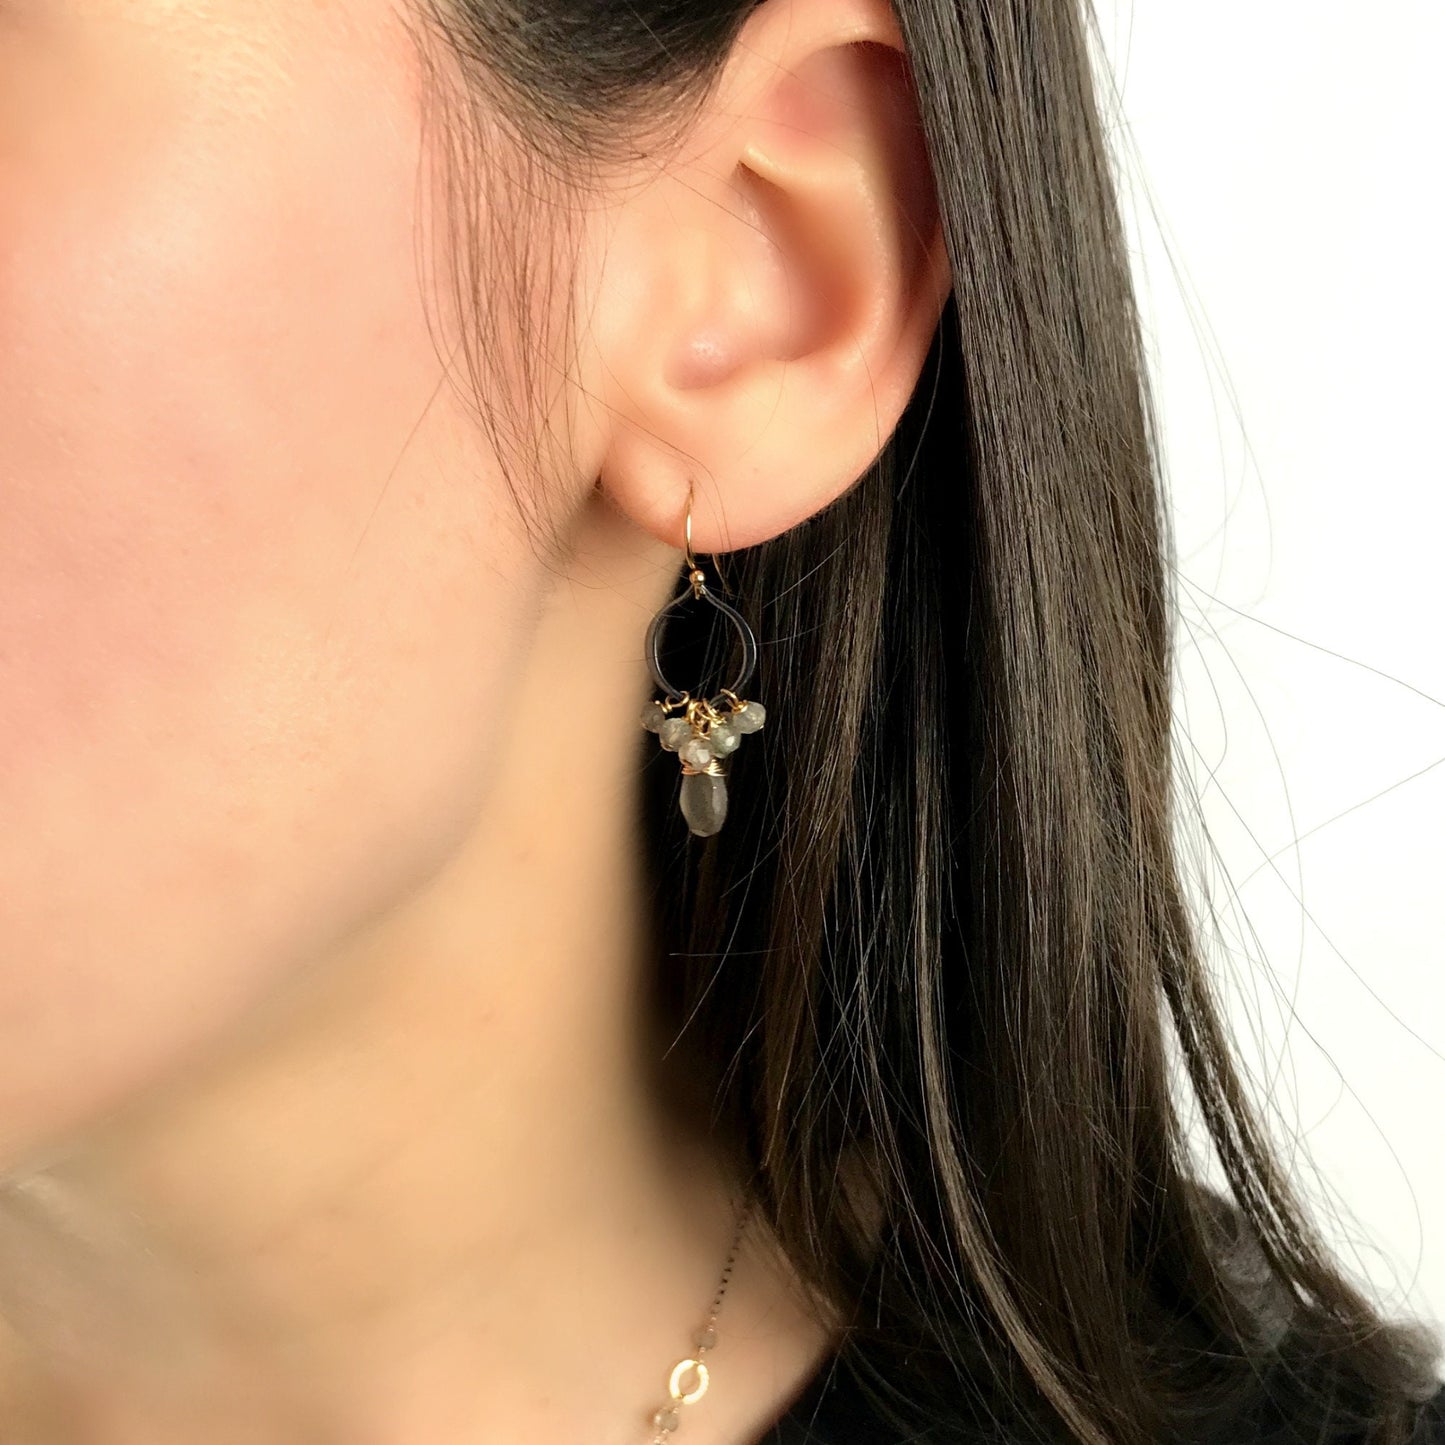 Labradorite Earrings,Dainty Earrings,Gemstone Earrings,Mixed Metal Earrings,Gemstone Jewelry,Celestial Jewelry,Modern Labradorite Earrings